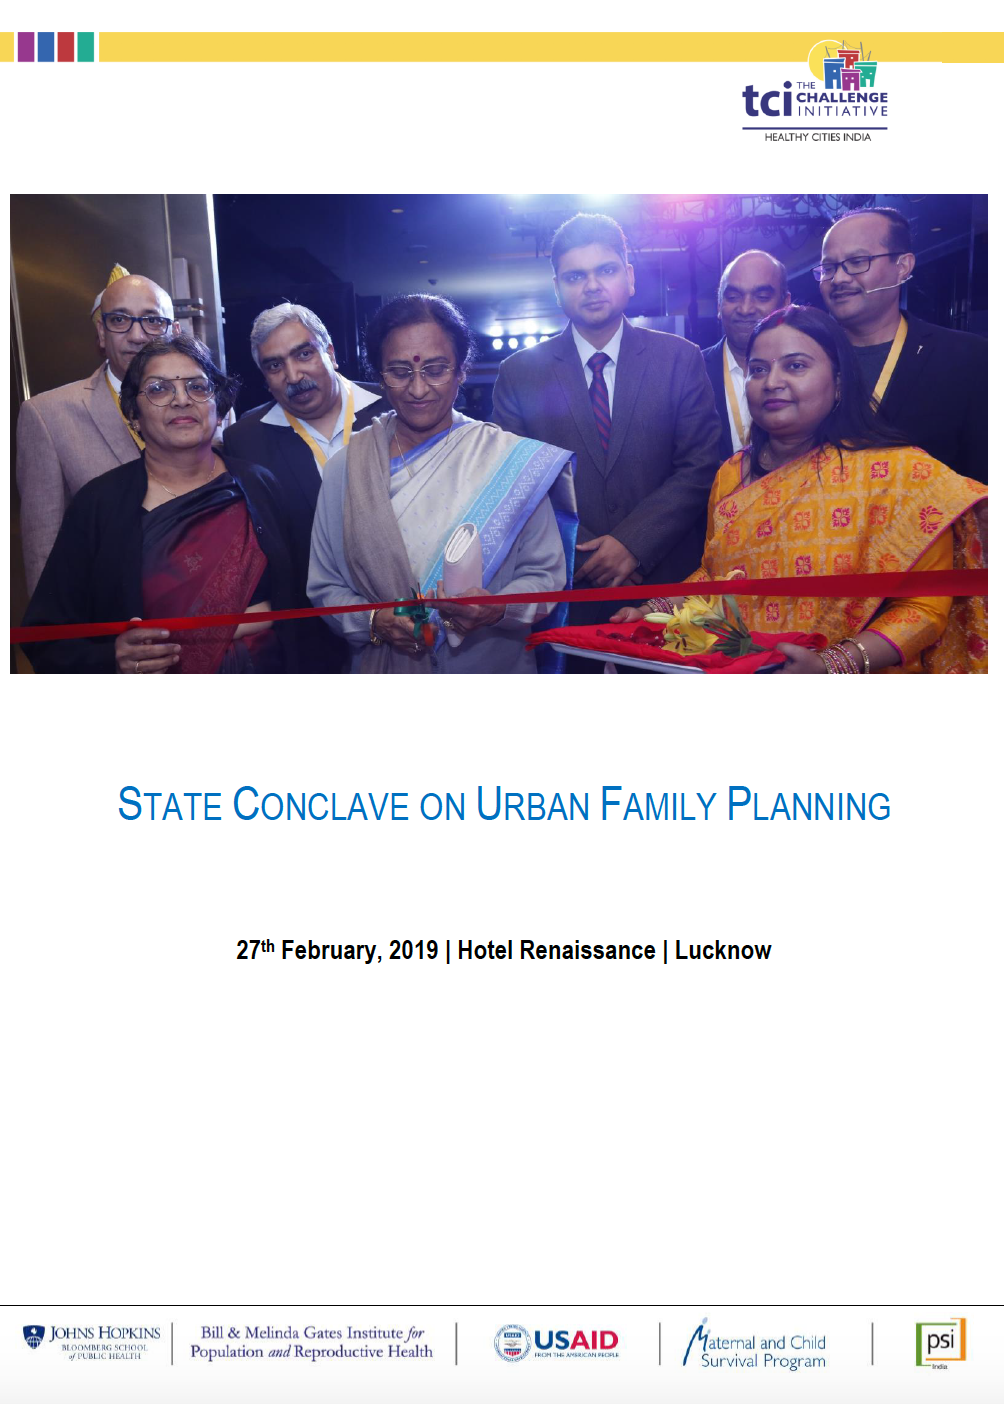 شہری خاندانی منصوبہ بندی پر یوپی اسٹیٹ کنکلیو، 27 فروری 2019